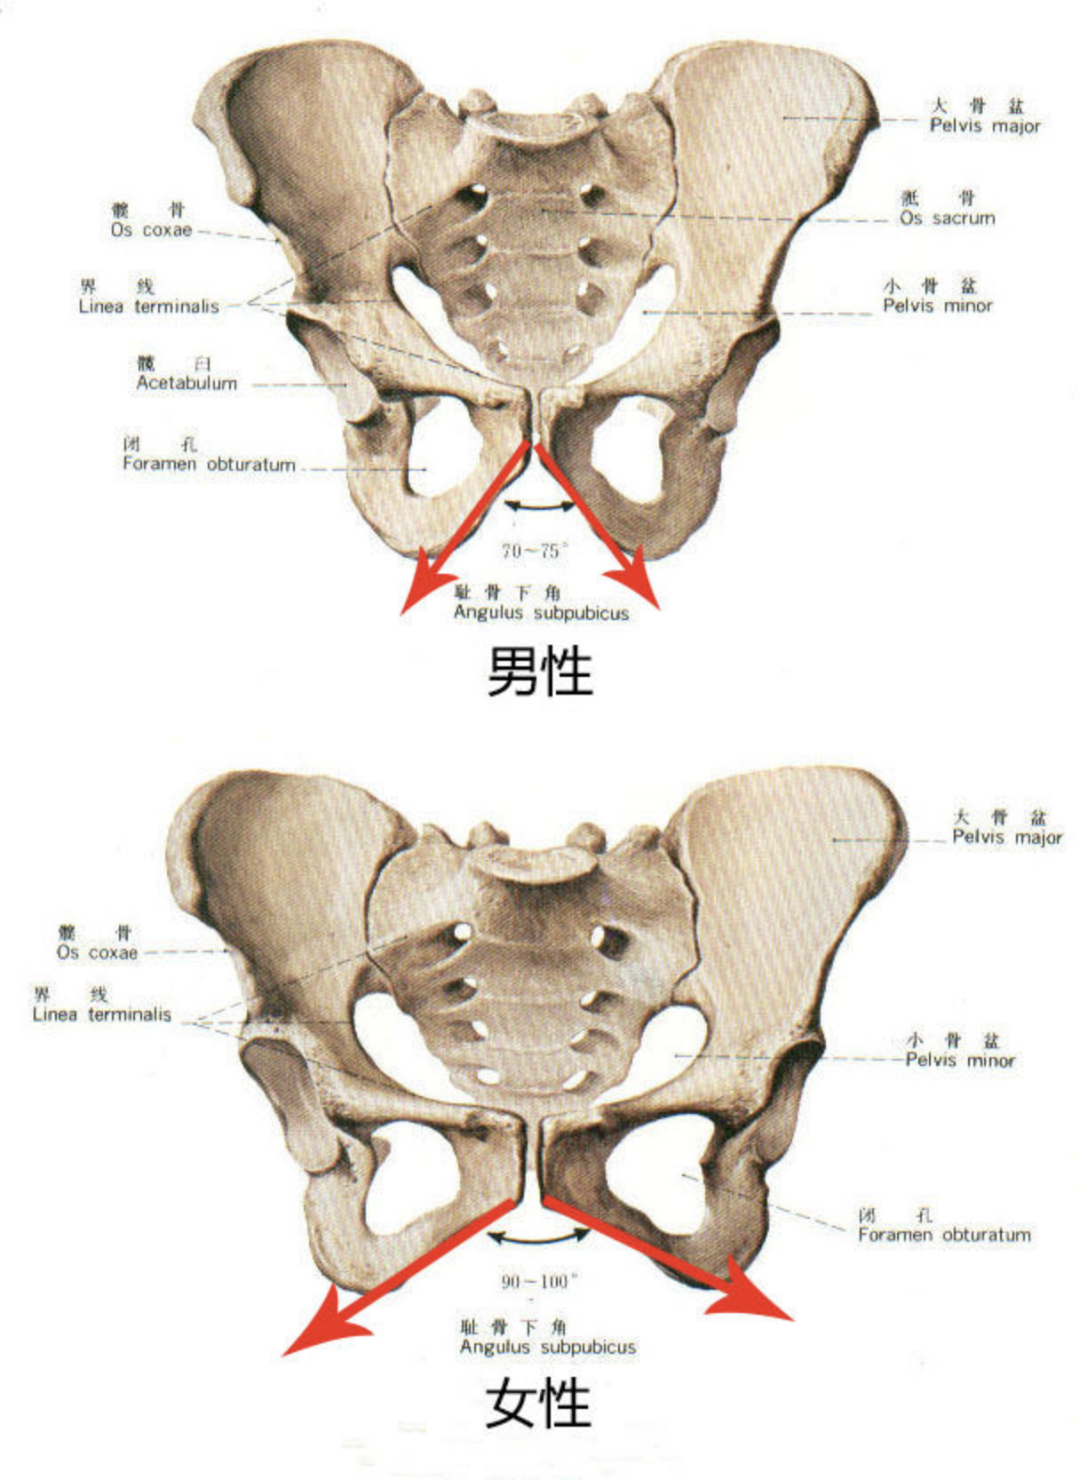 男女的骨盆形状有所不同男性骨盆要小,且耻骨下角为锐角而女性的耻骨